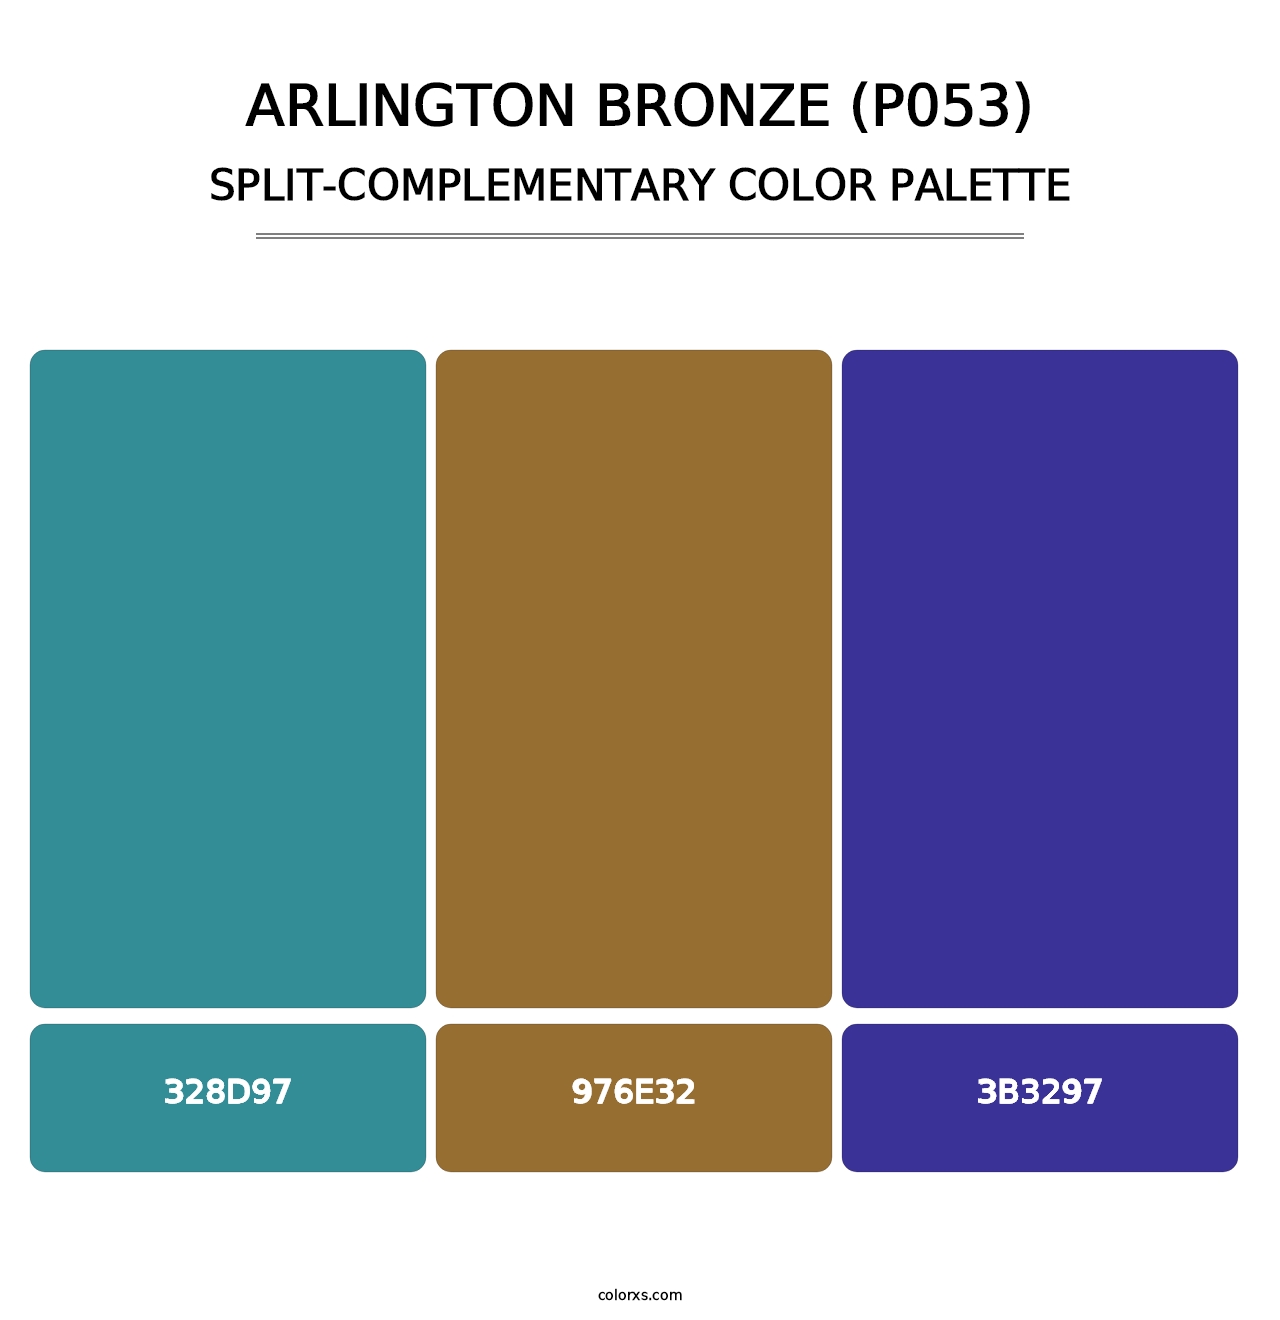 Arlington Bronze (P053) - Split-Complementary Color Palette